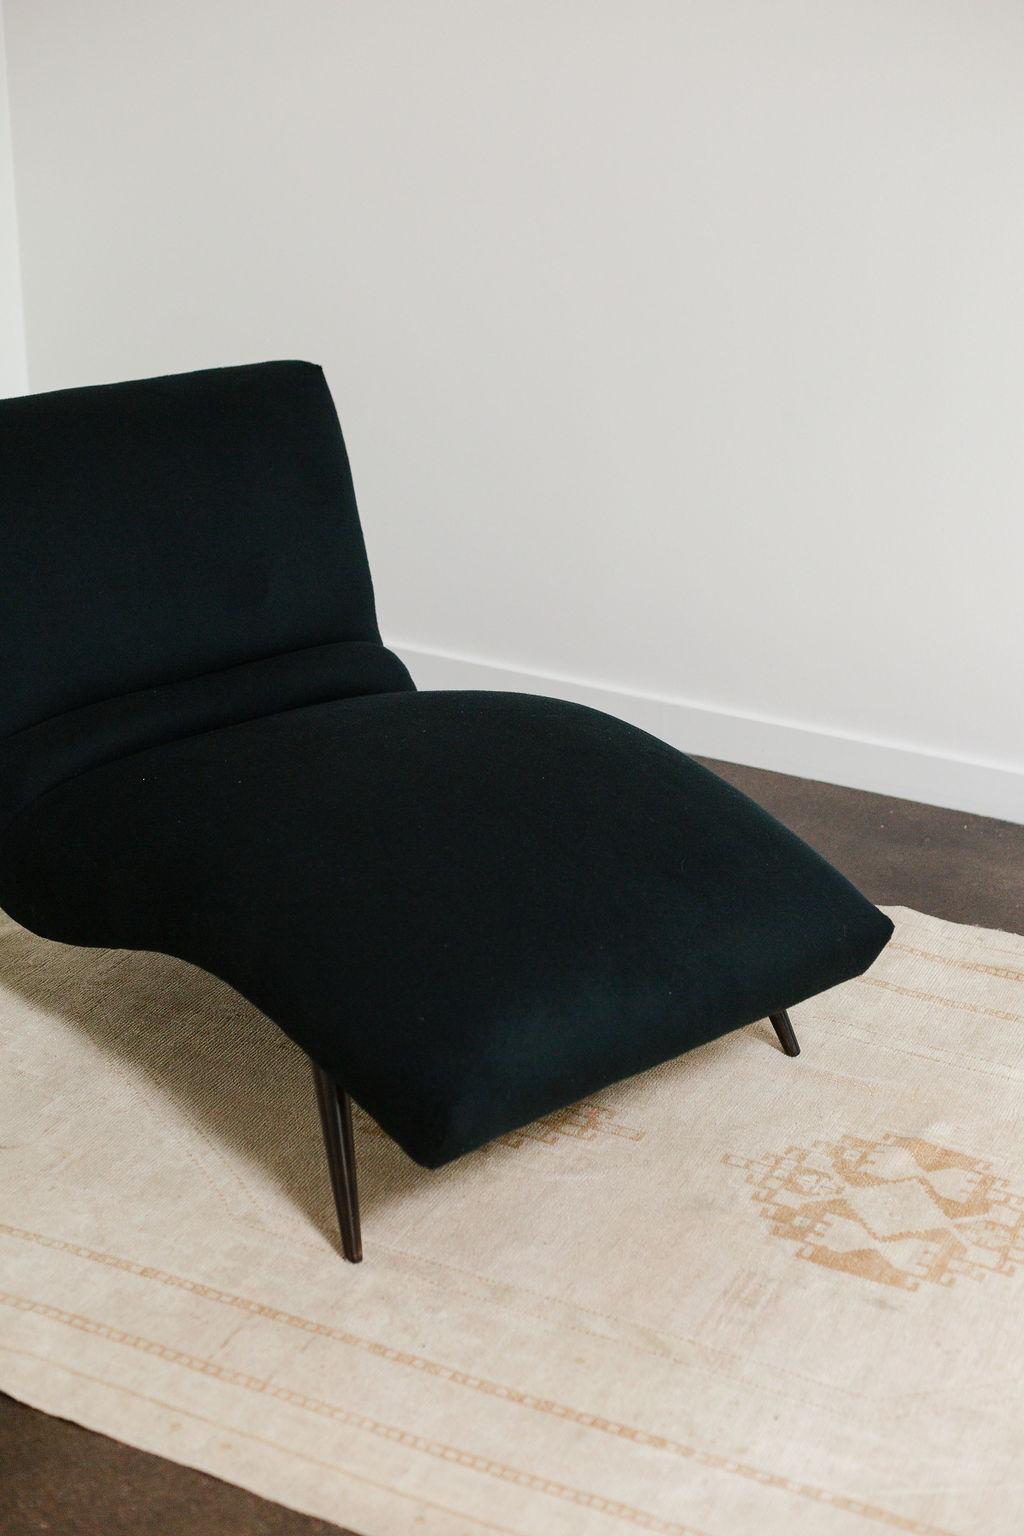 contour chair lounge model 100